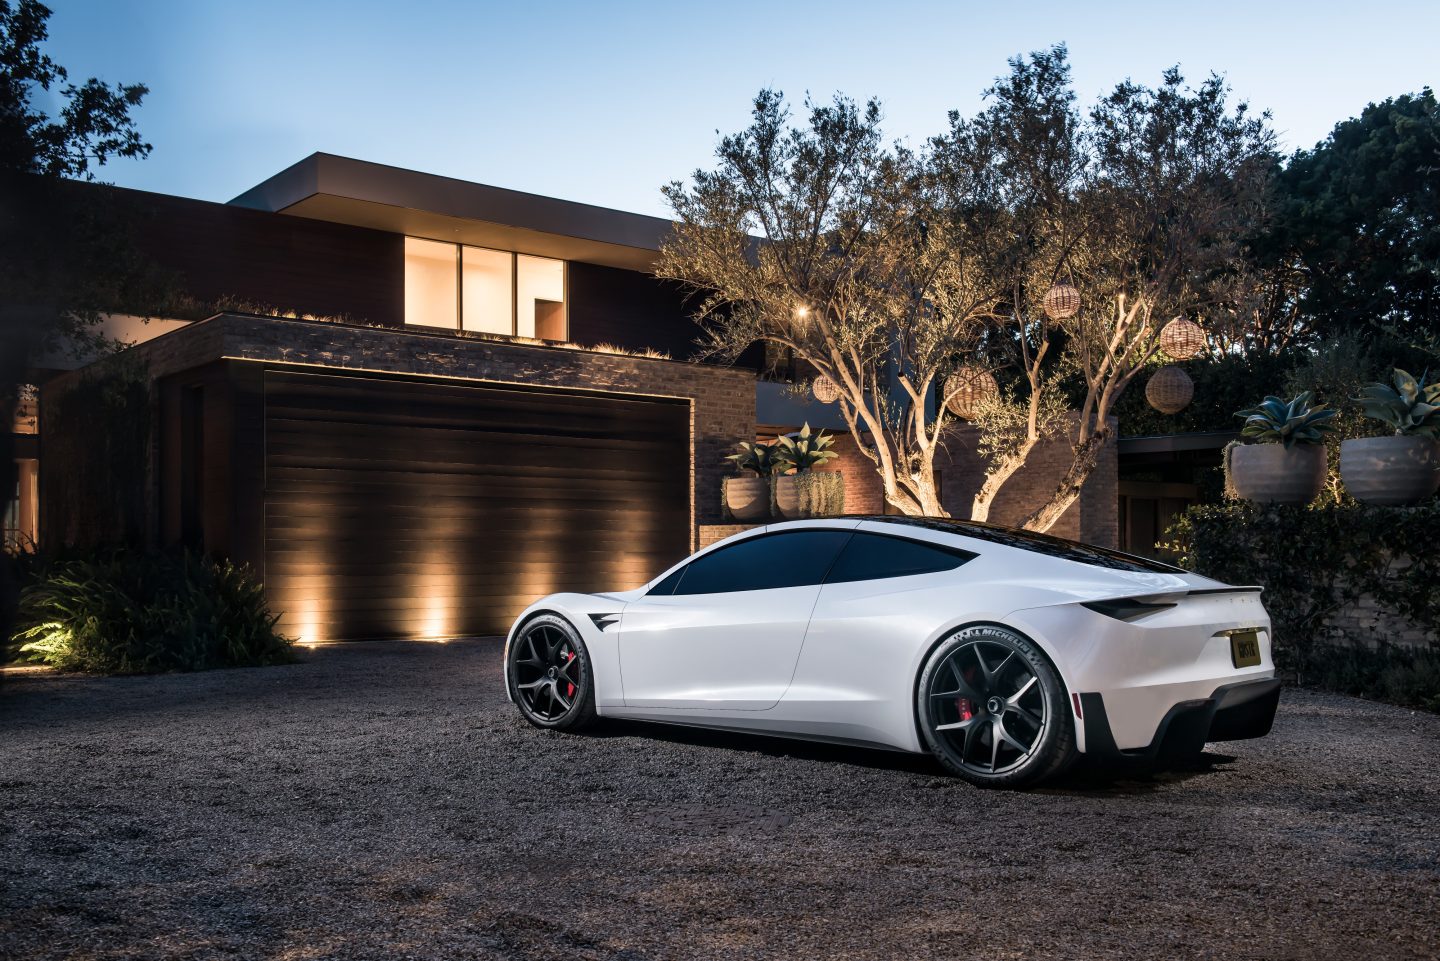 En hvit Tesla Roadster står i en gruset oppkjørsel foran et moderne hus